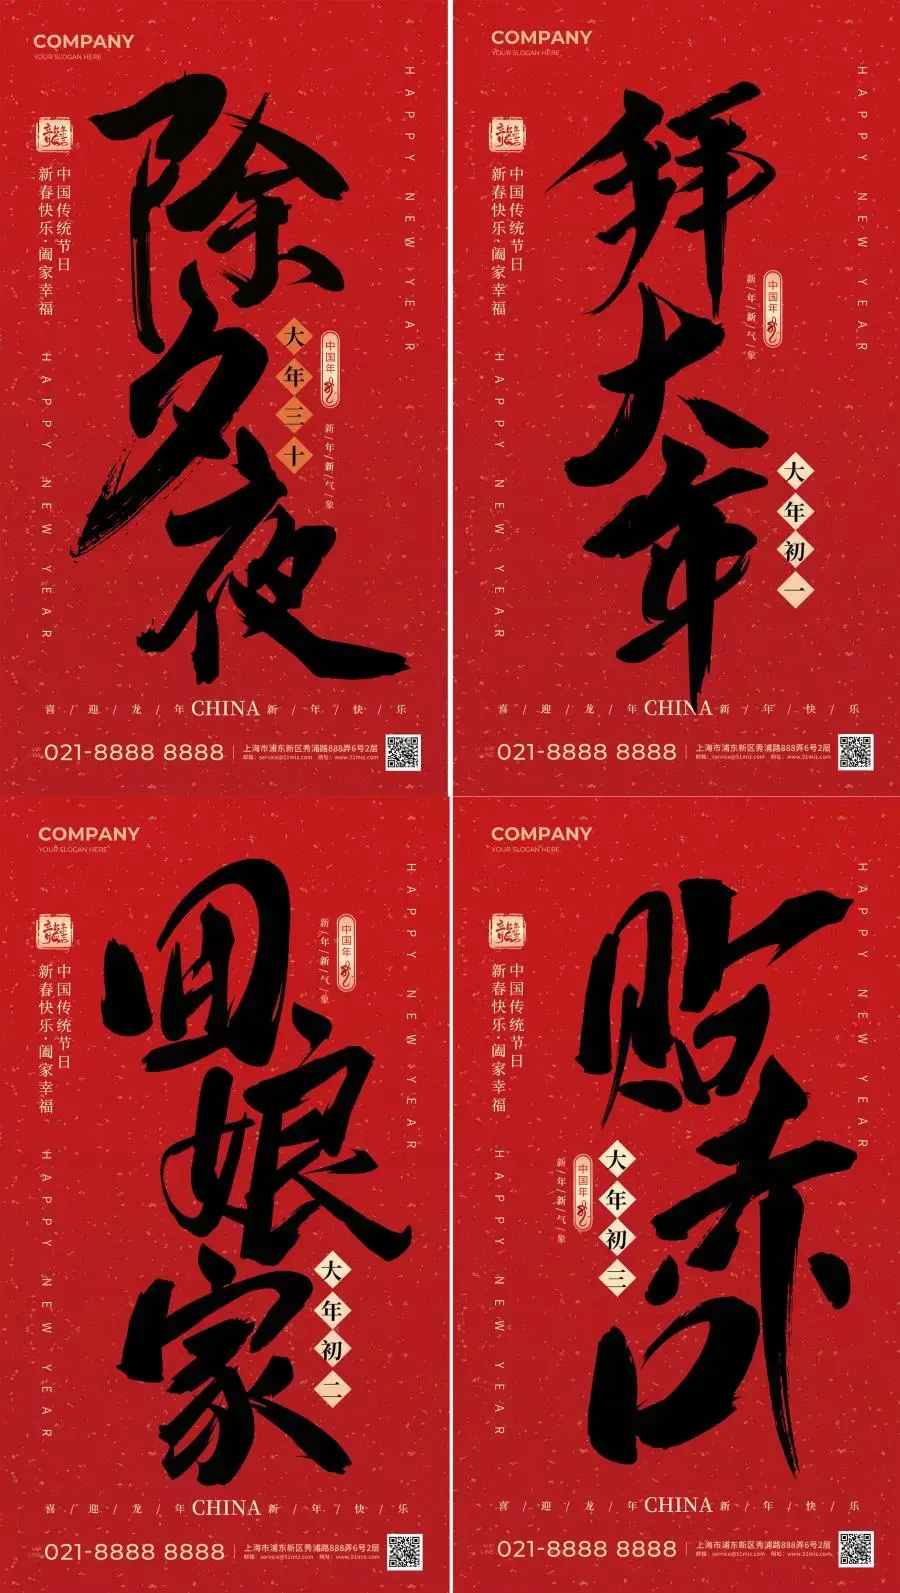 春节除夕新年过年拜年正月初一开工年俗系列海报PSD设计素材模板-爱设计爱分享c